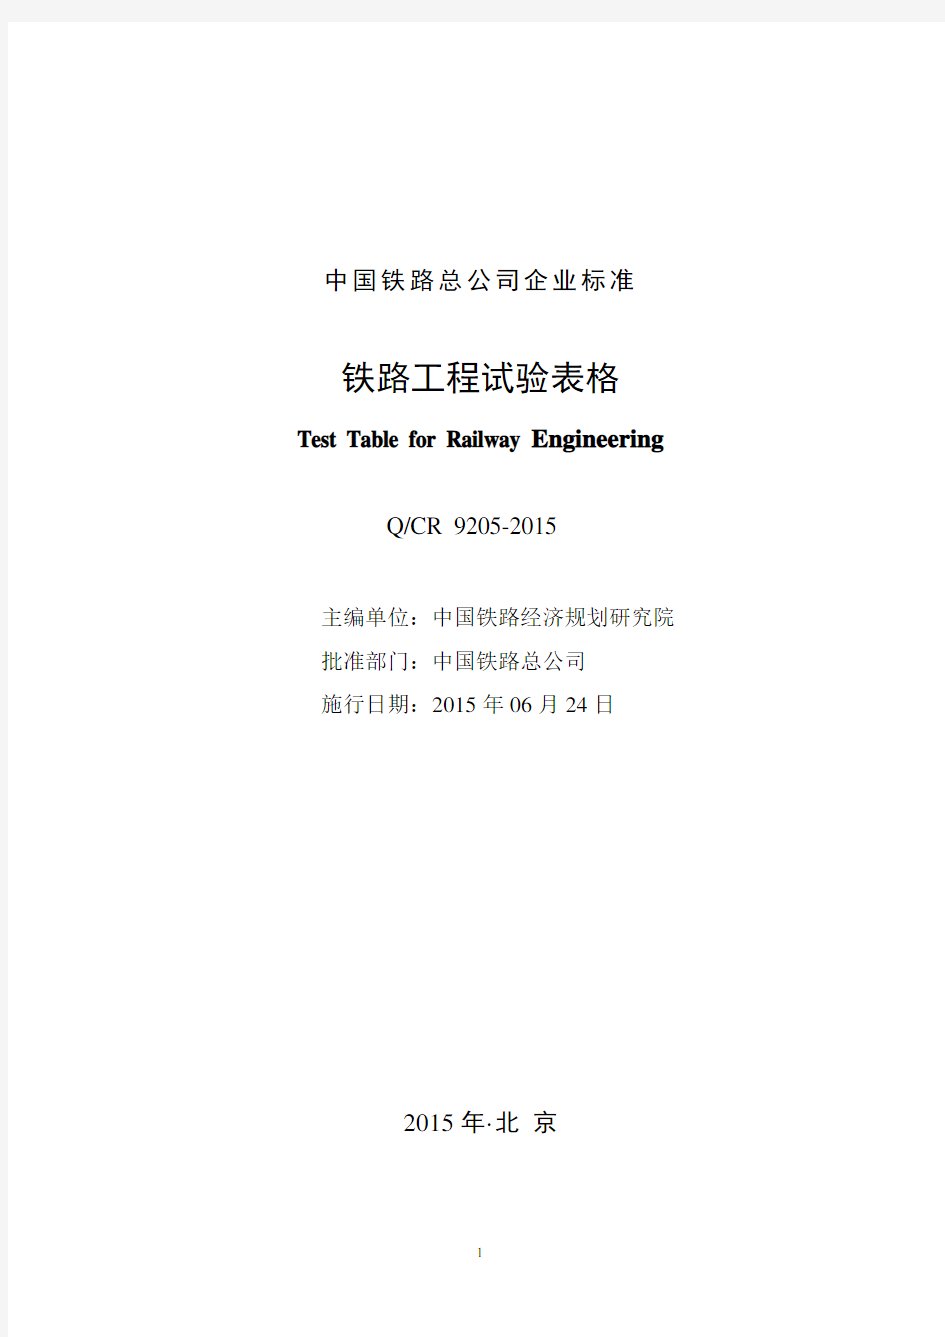 qcr 9205-2015铁路工程试验表格